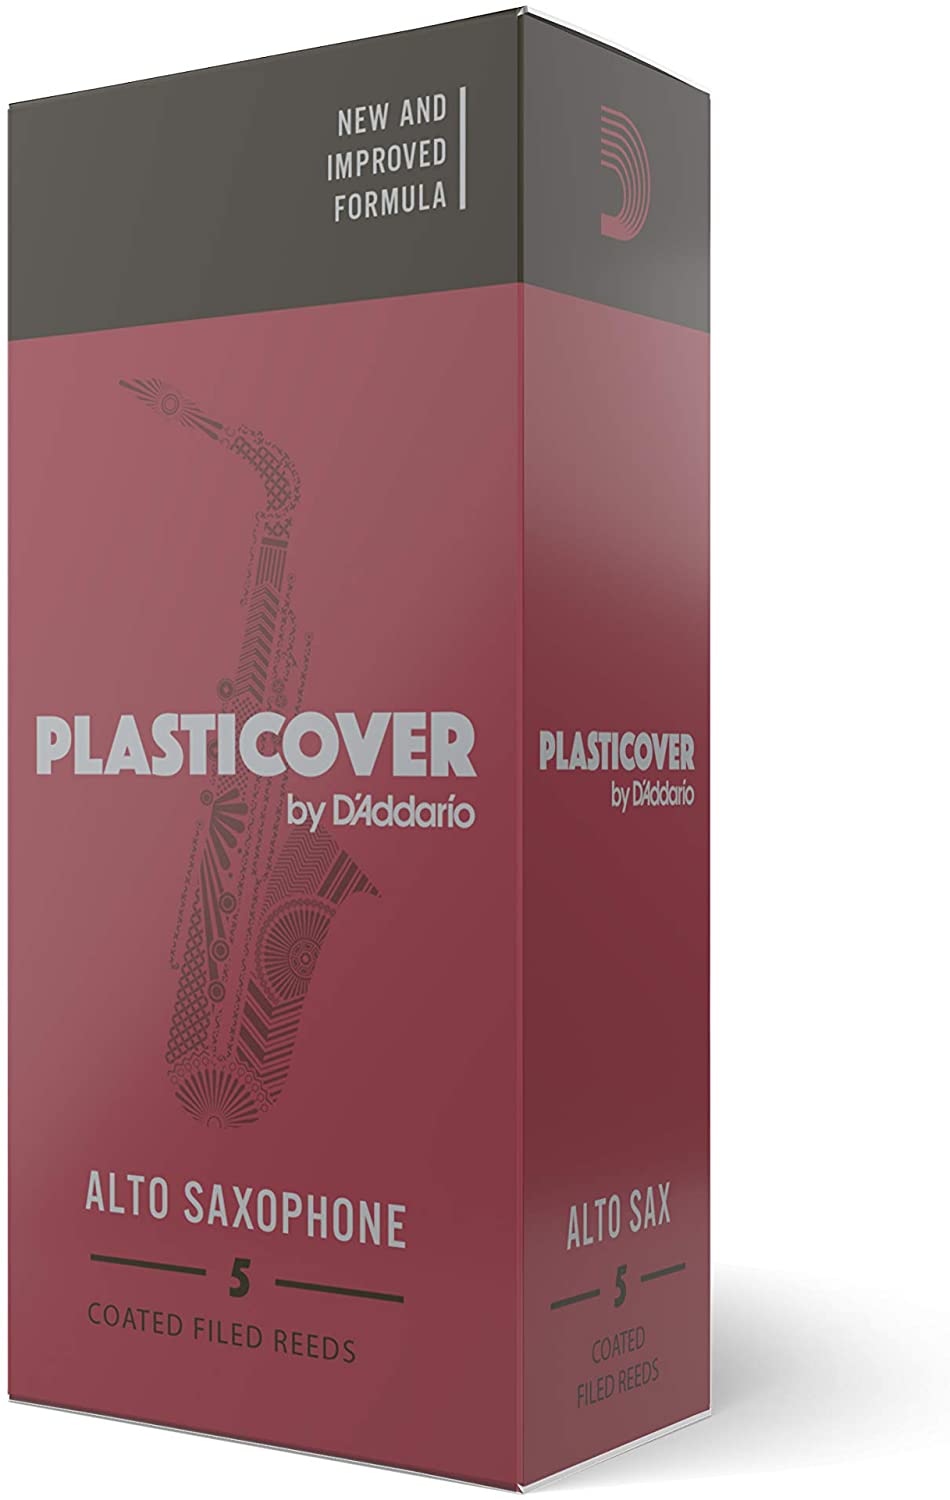 D'addario Plasticover Series Eb Alto Saxophone Reeds, 5pcs box (assorted strength)